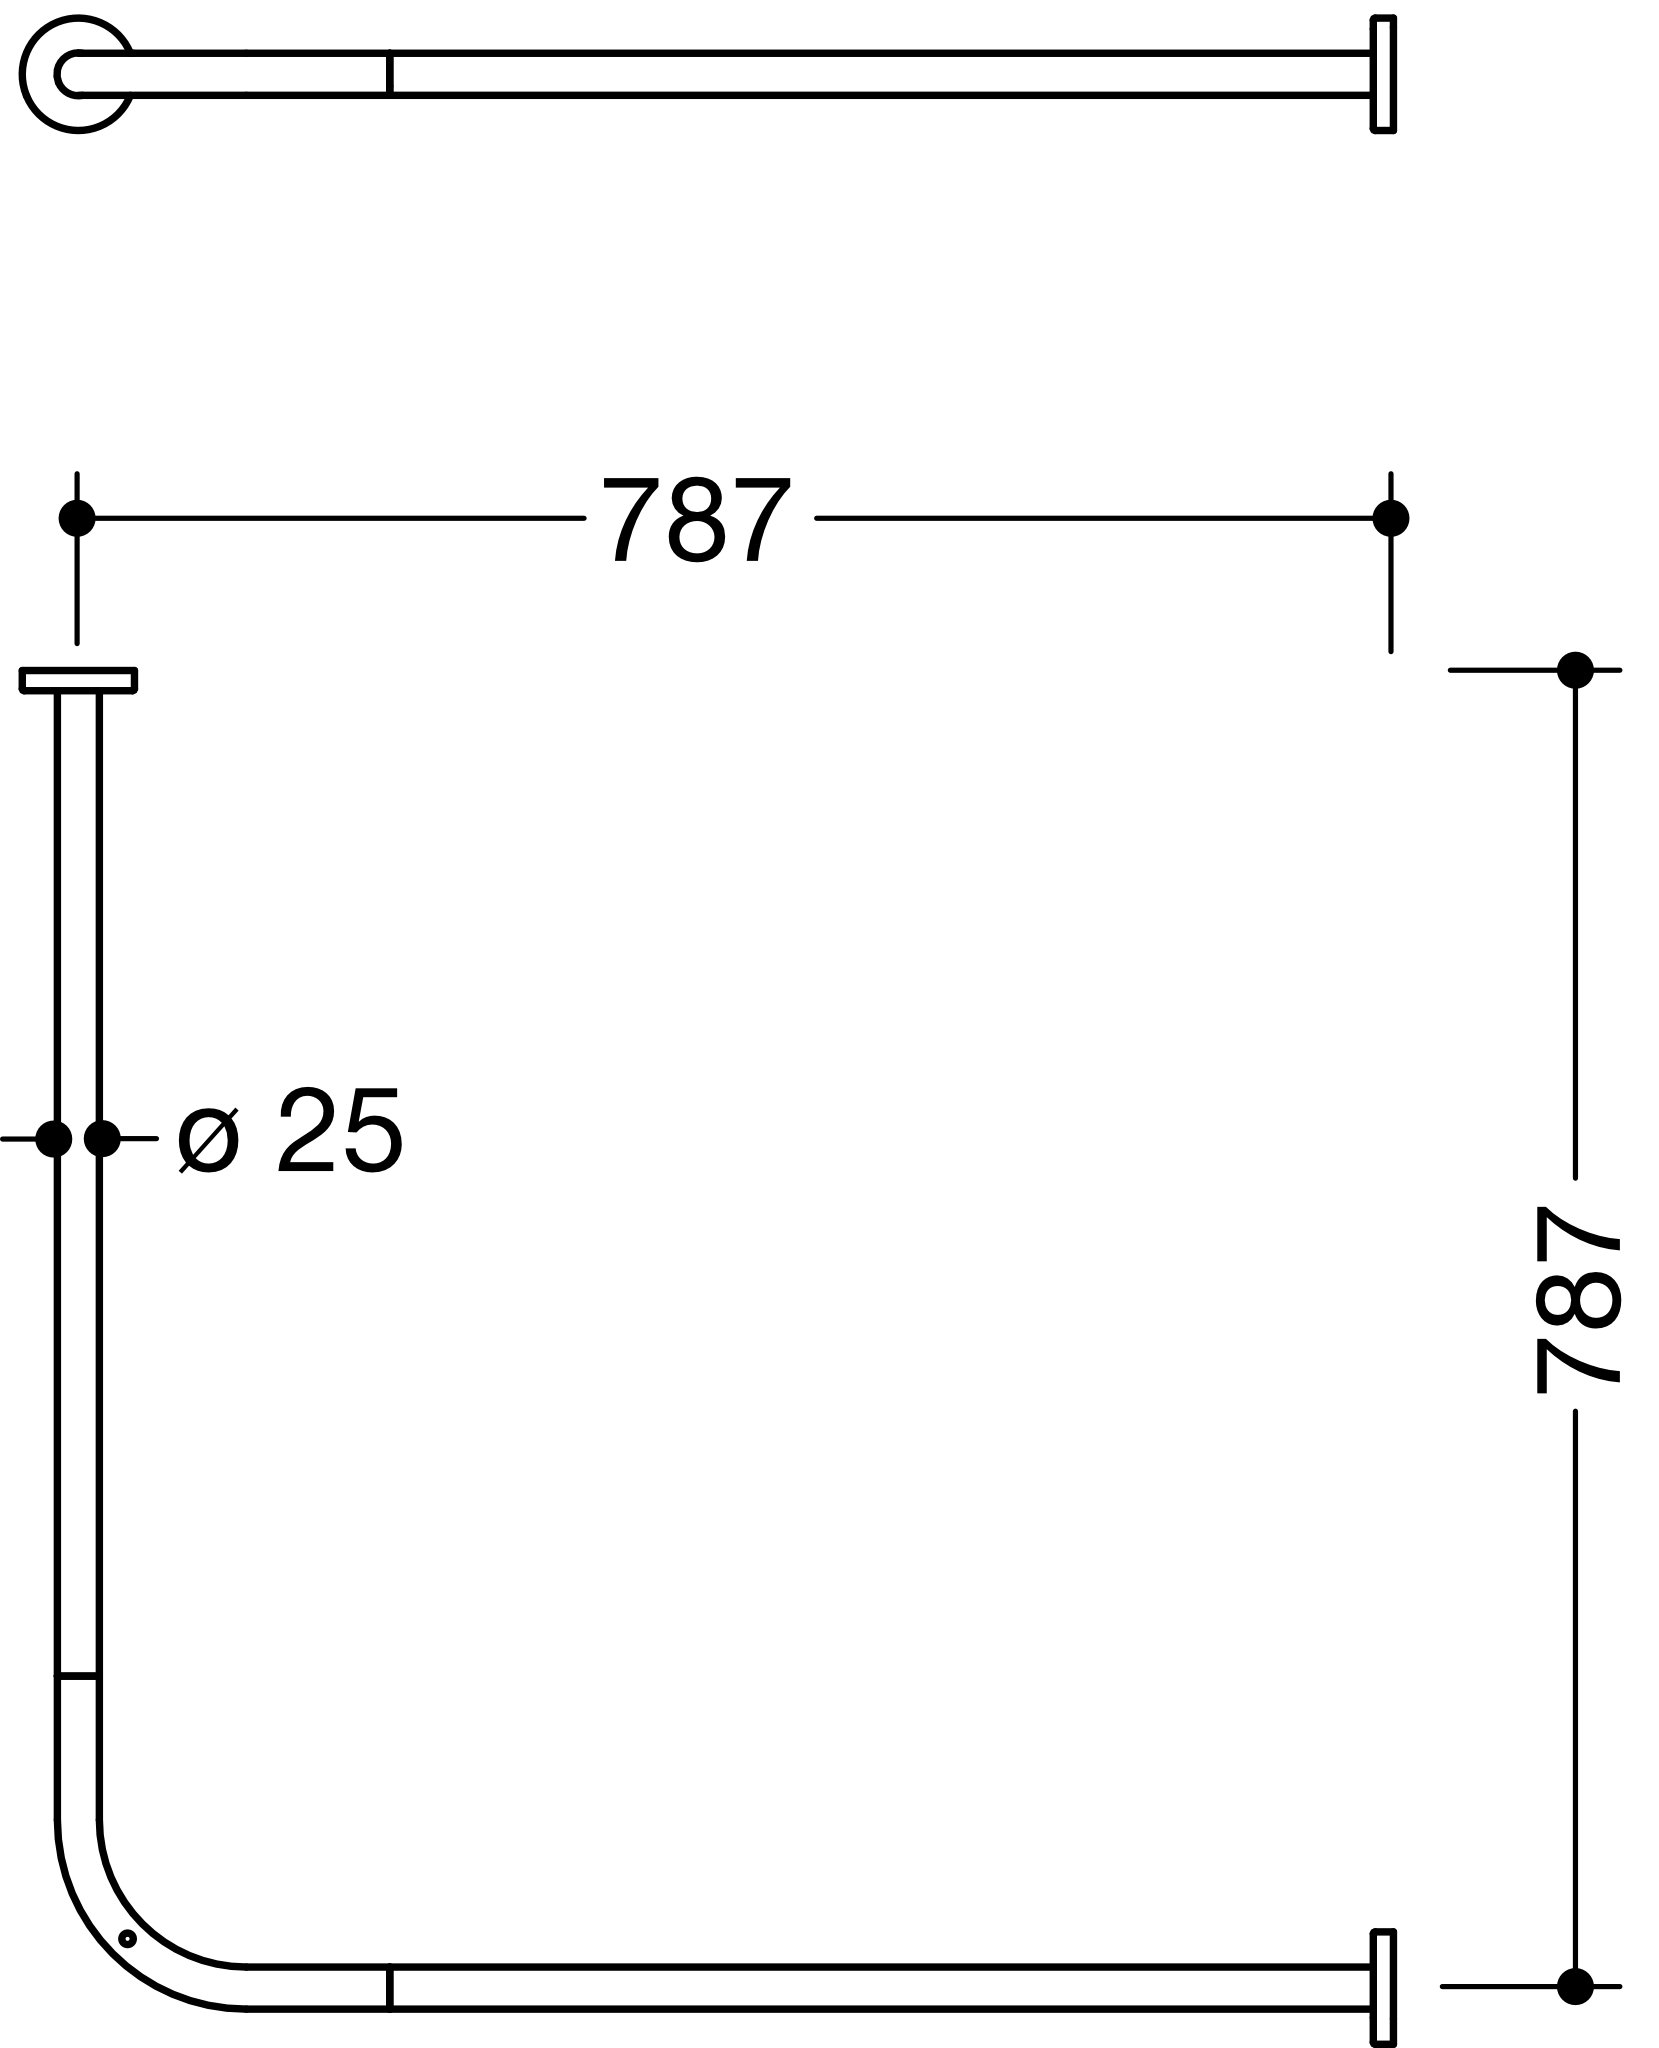 VH-Stange, d:25, A1/A2=787, 16 Ringe, chrom